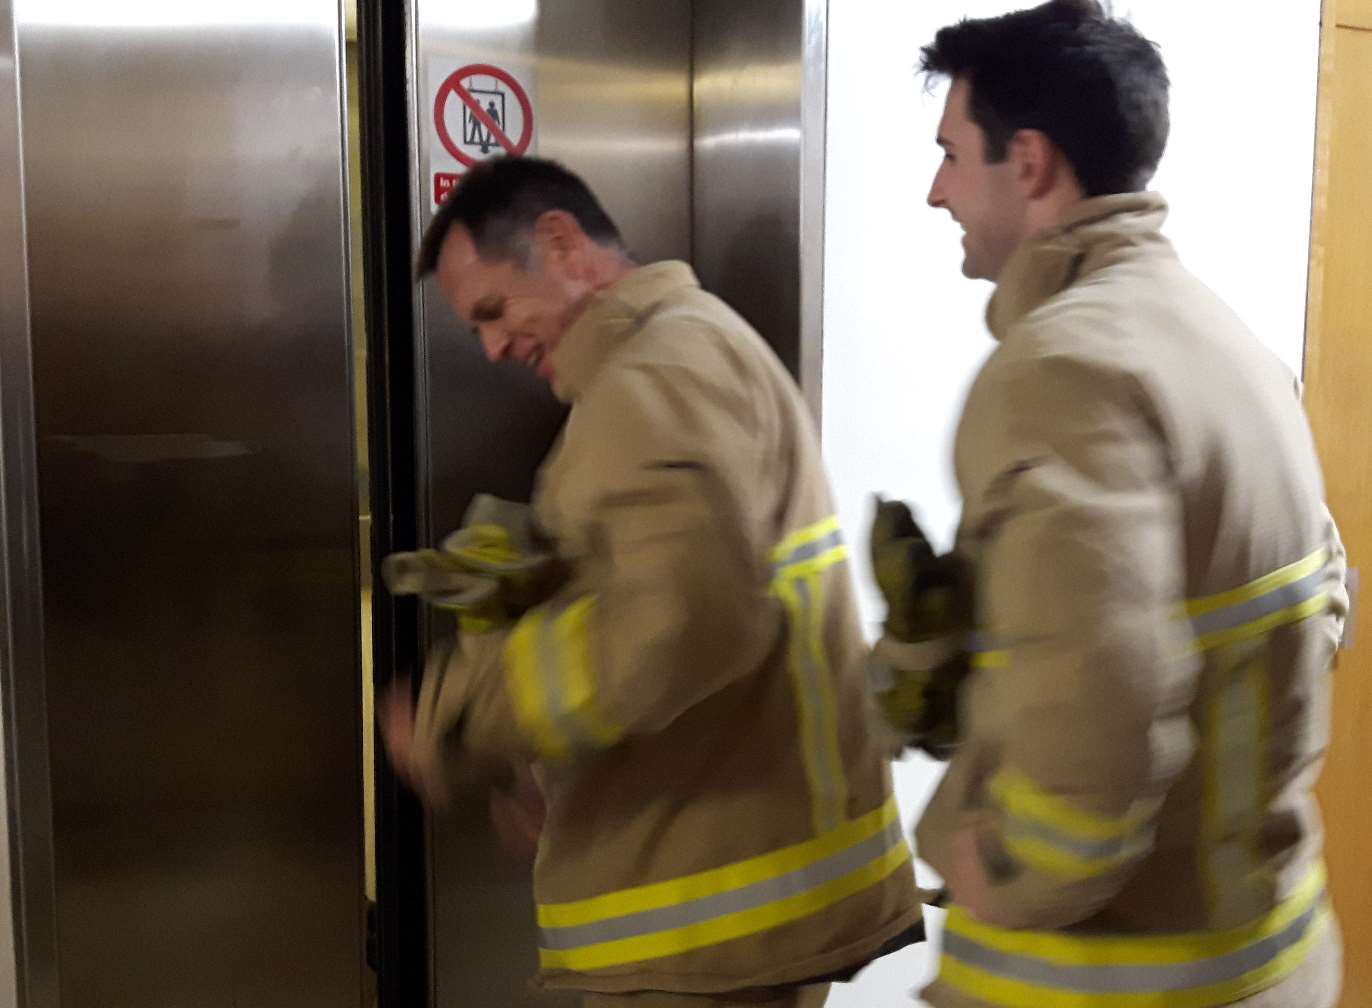 Firemen prepare to force open the doors